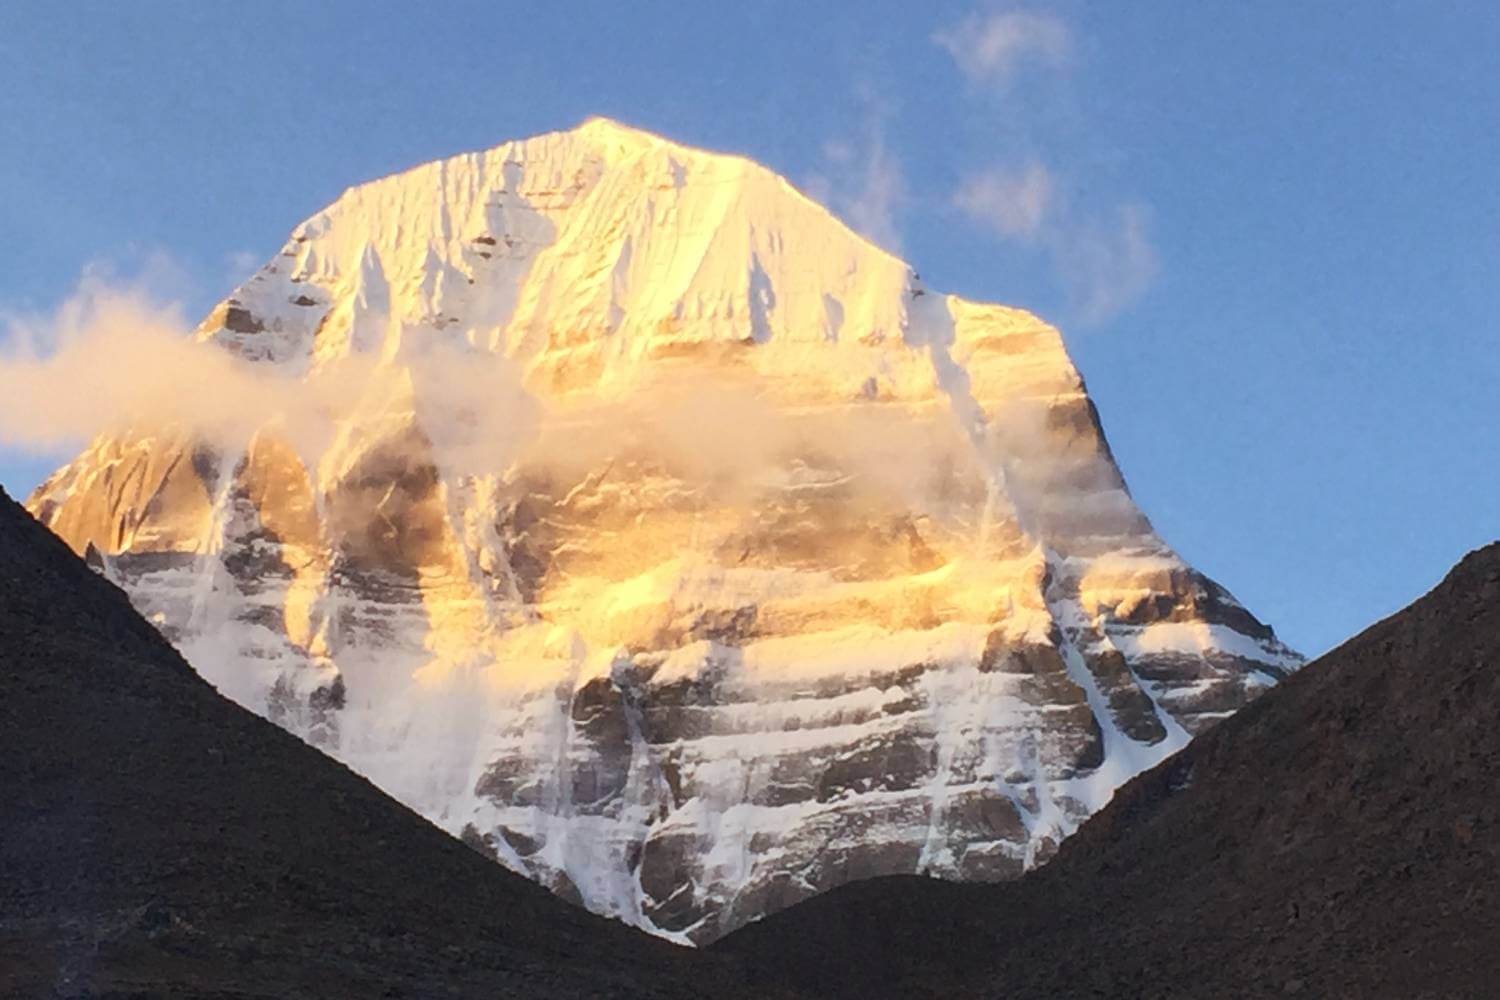 Mount Kailash Parvat